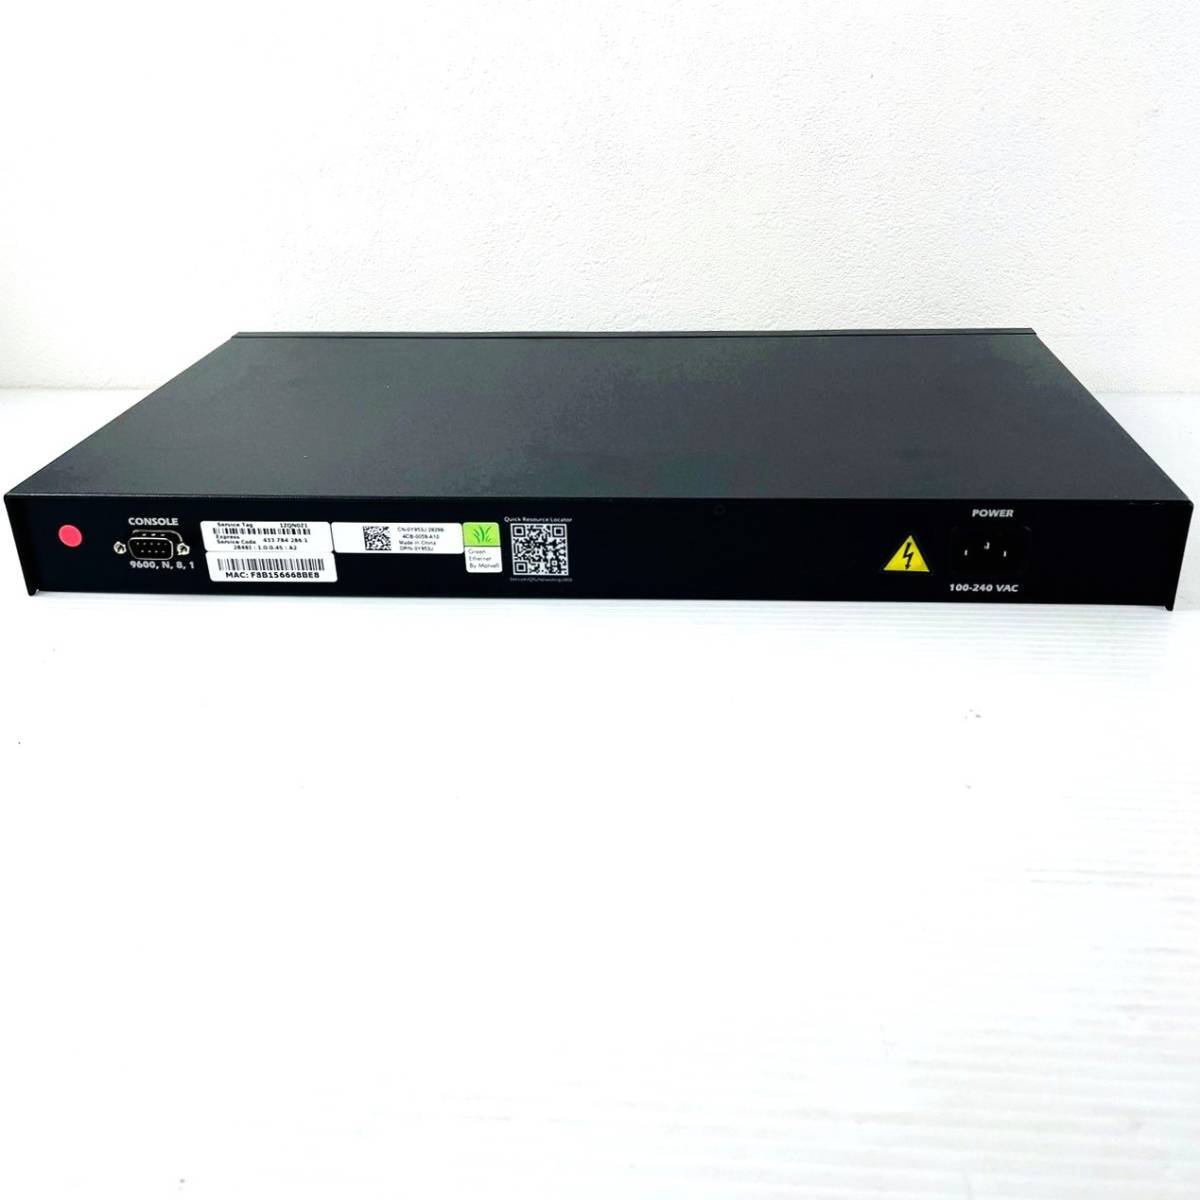 □24【通電OK】DELL PowerConnect 2848 スイッチ switch マネージド L2/L3 Gigabit Ethernet (10/100/1000) 1U ブラック 黒 デルの画像5